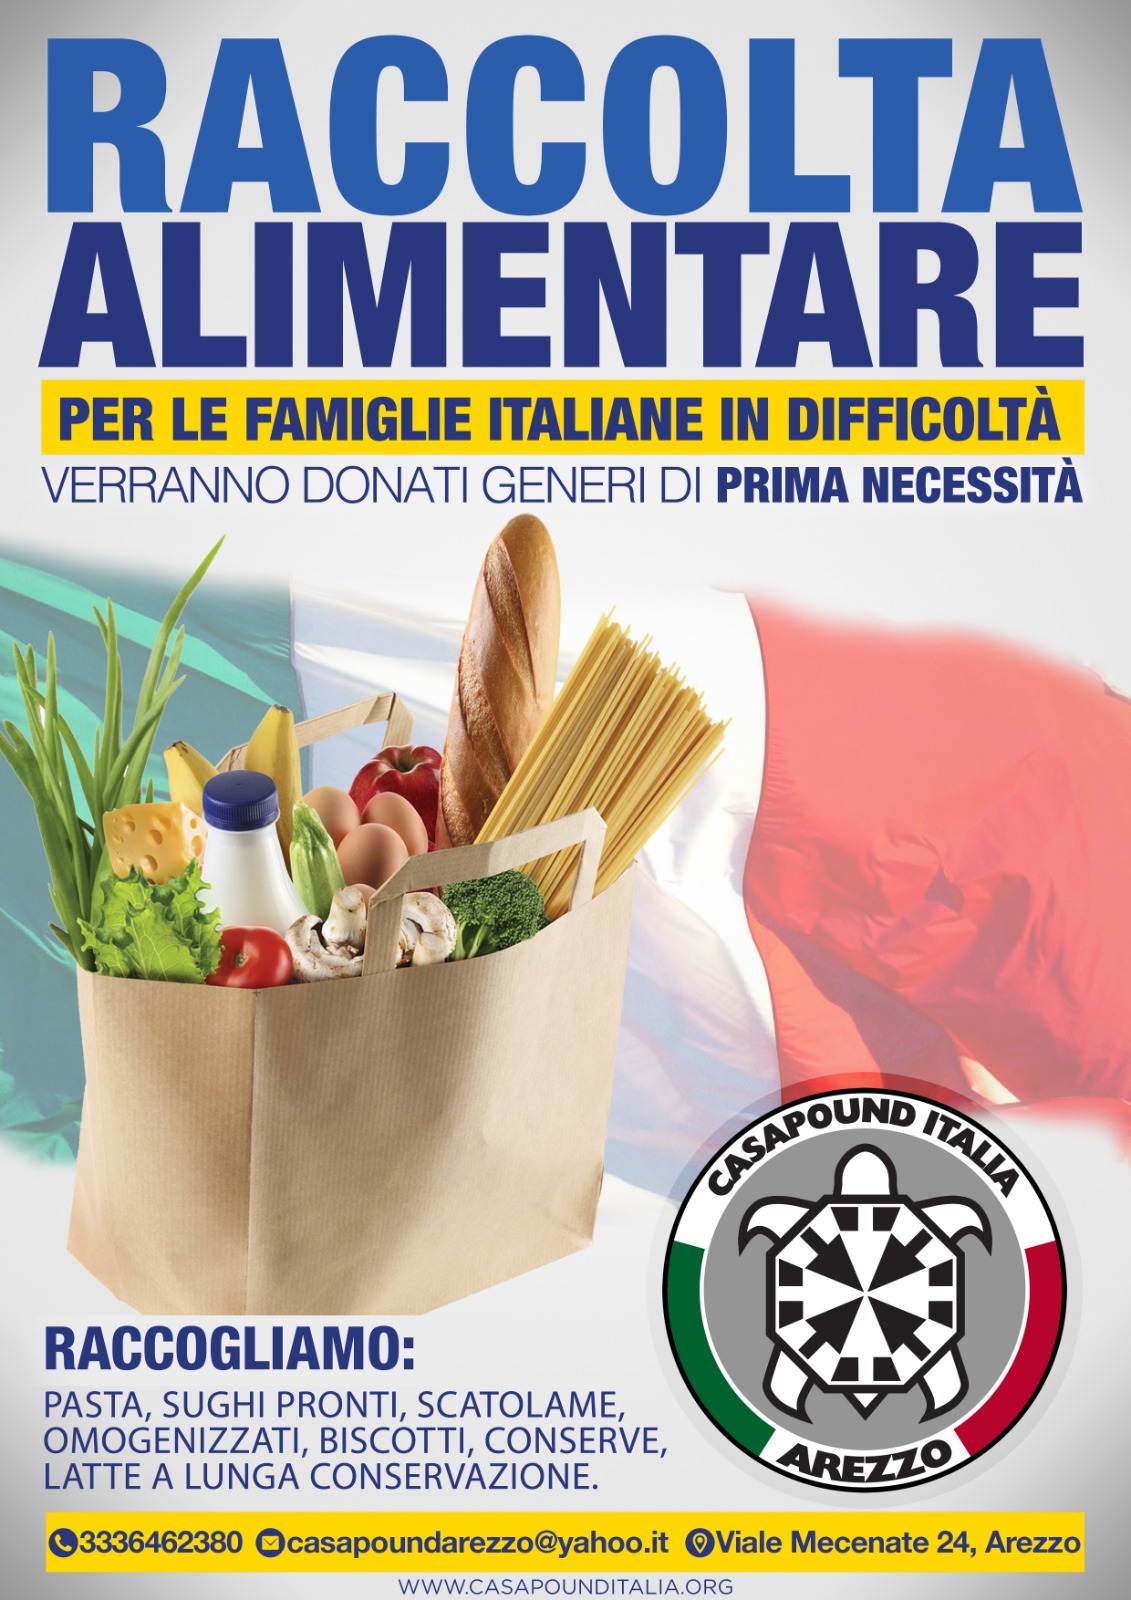 Crocini (CasaPound): “Continua la raccolta alimentare per le famiglie italiane”